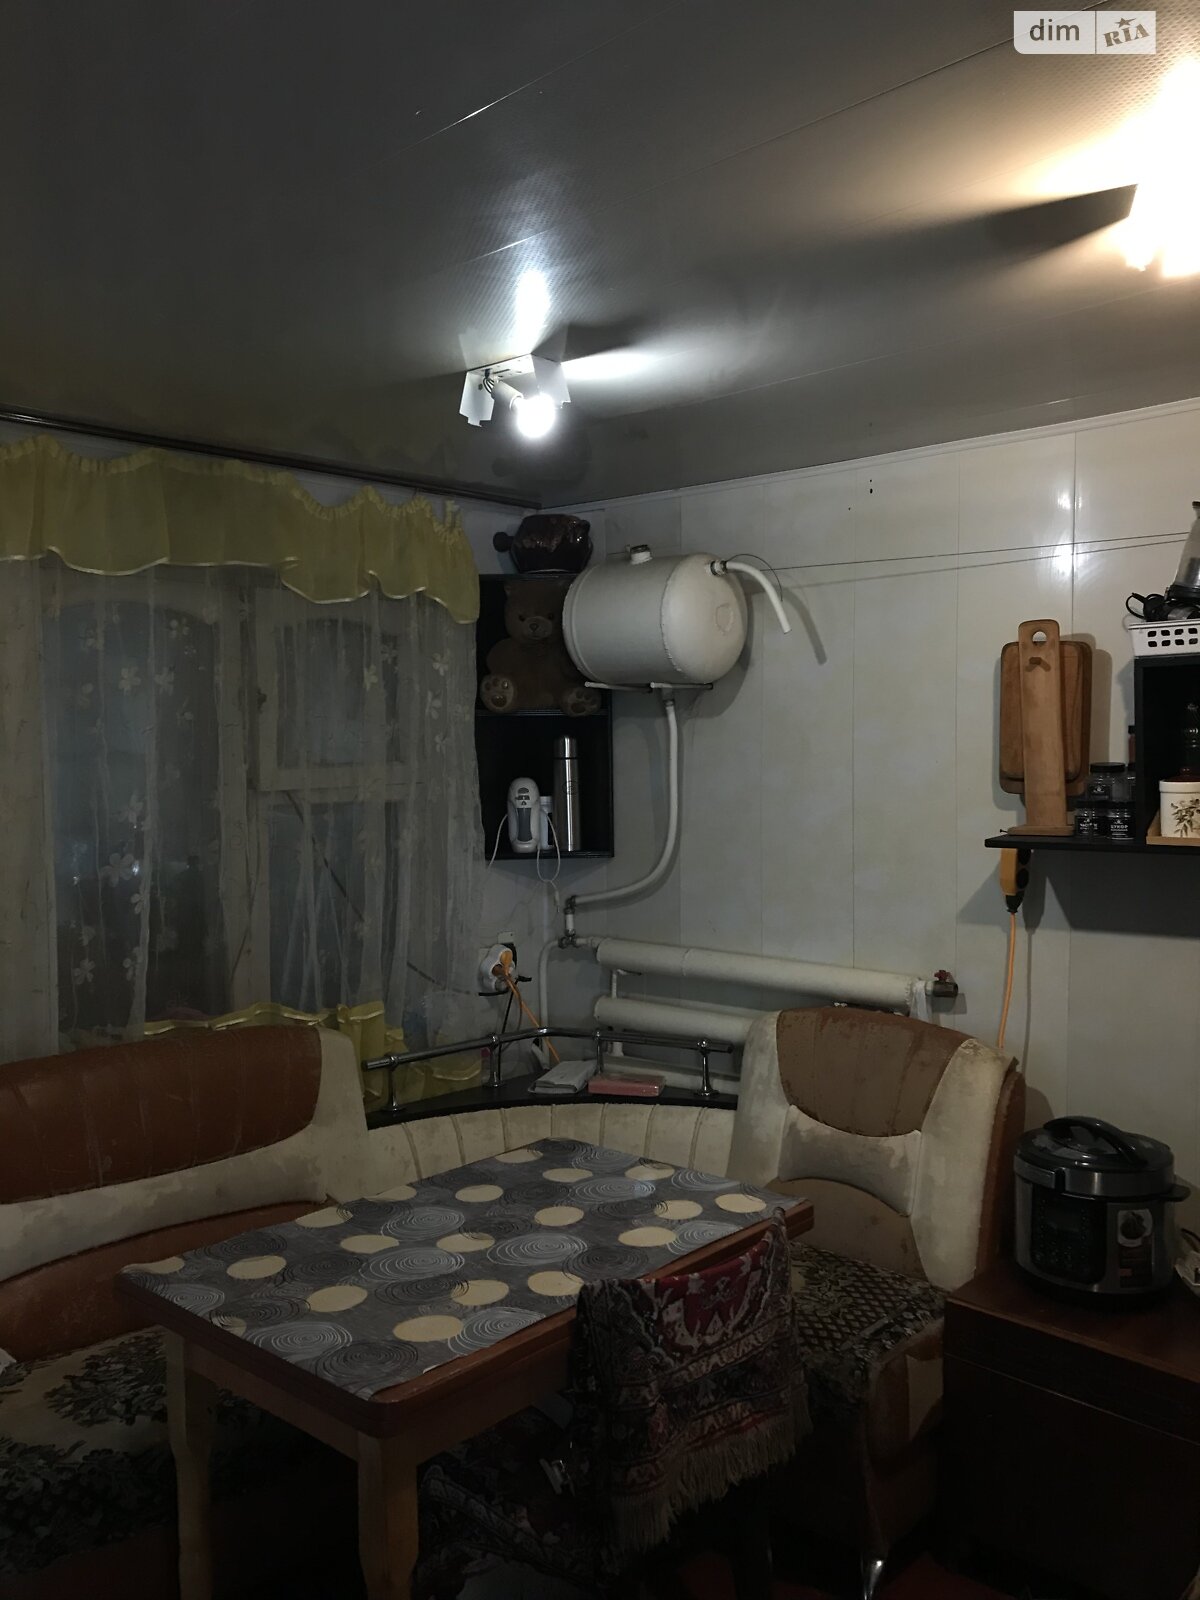 Продажа части дома в Глухове, улица Генерала Грекова (Войковая), 2 комнаты фото 1